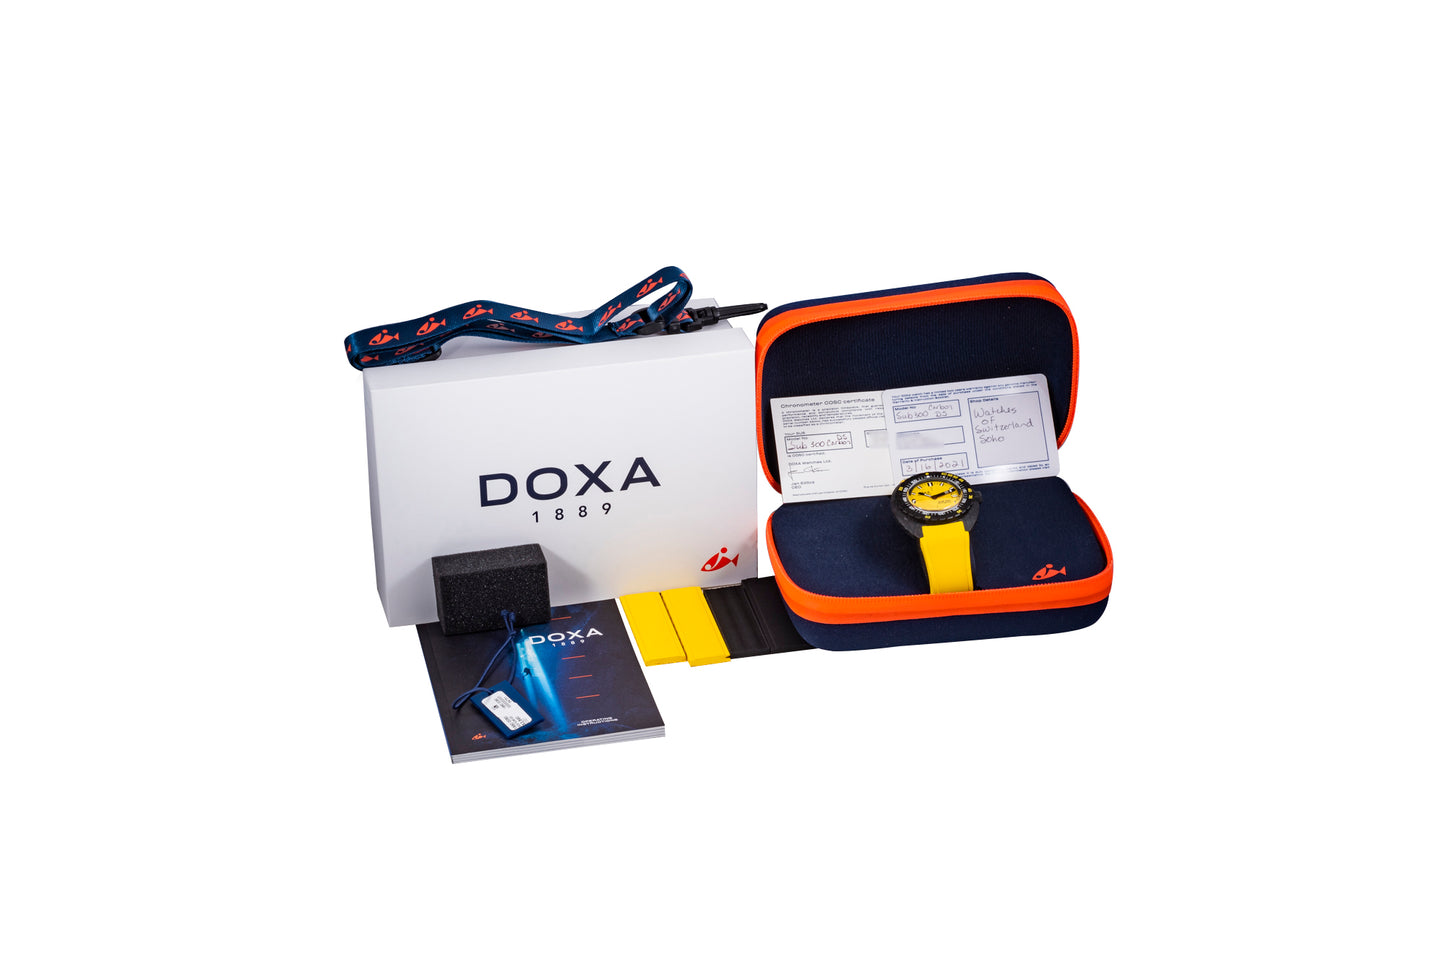 DOXA Sub 300 Carbon 'Divingstar'